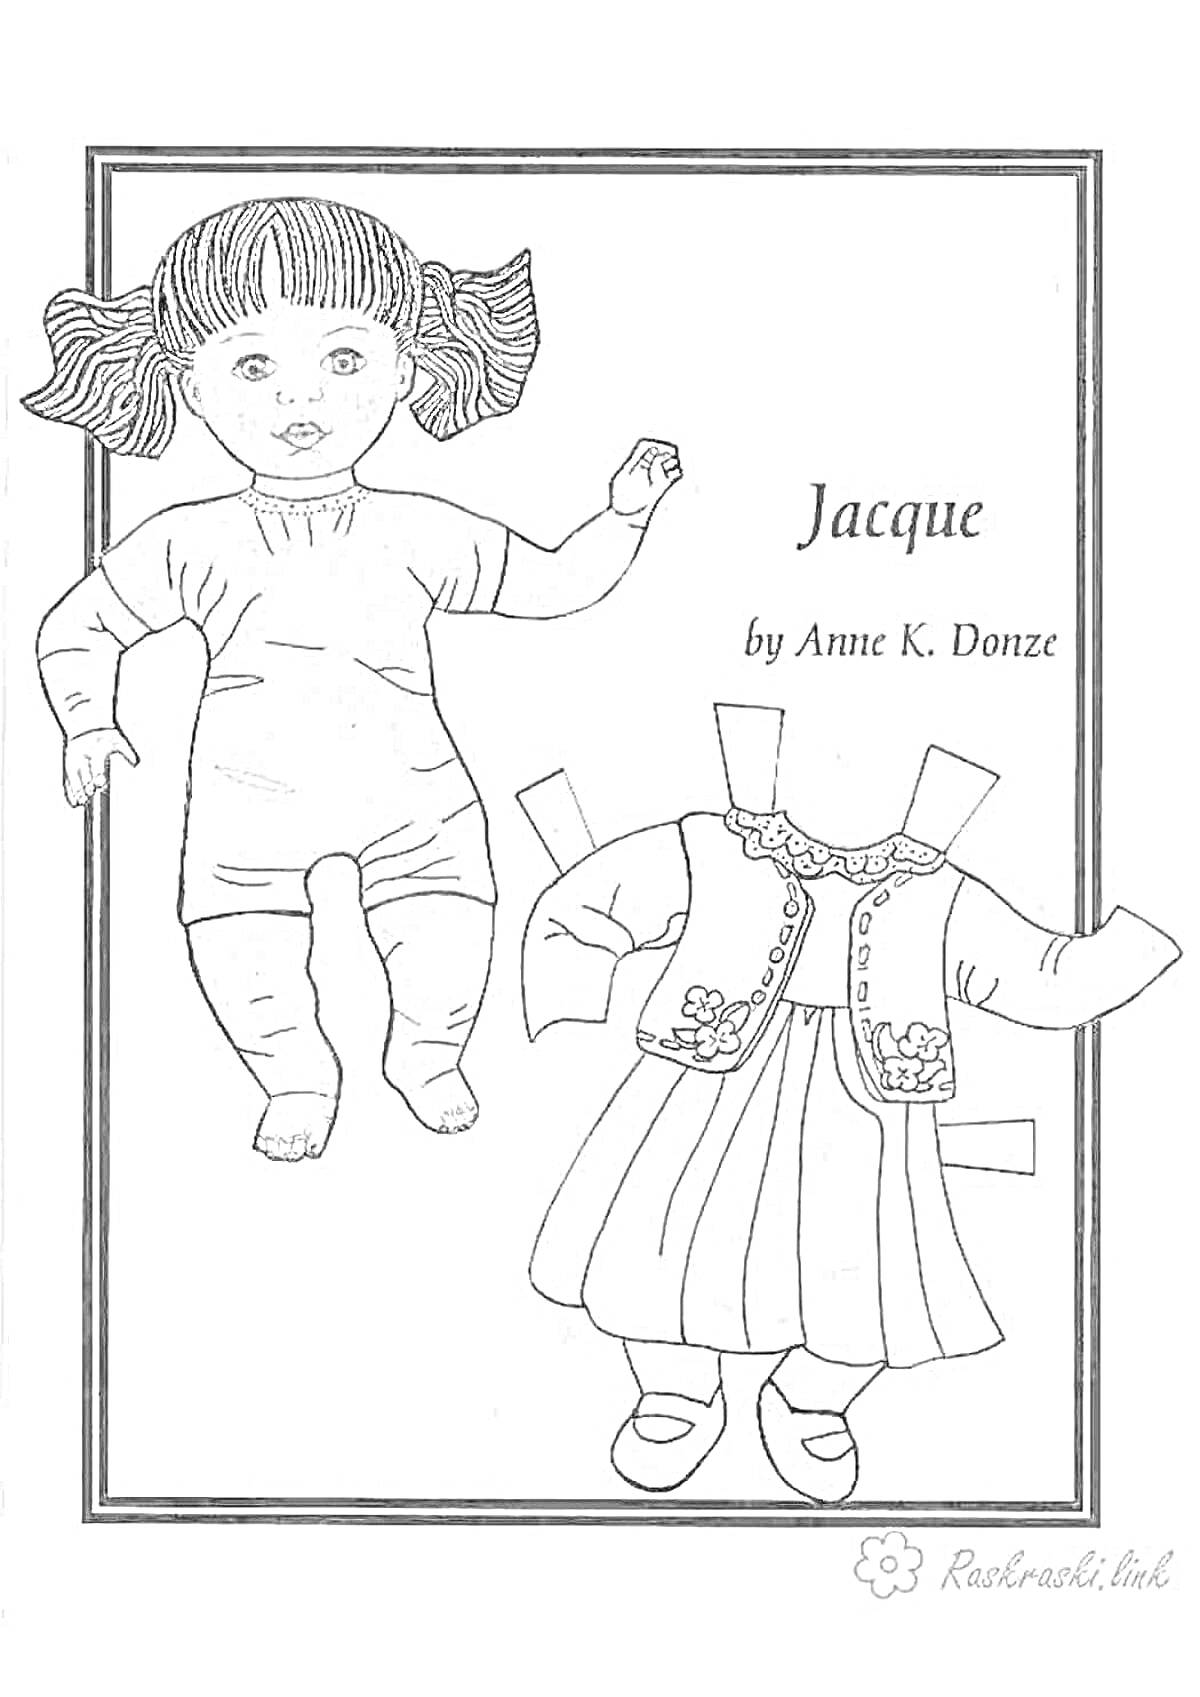 Раскраска Кукла реборн с комплектом одежды. На фото - кукла реборн с развевающимися волосами и один комплект одежды, включающий платье и жакет.